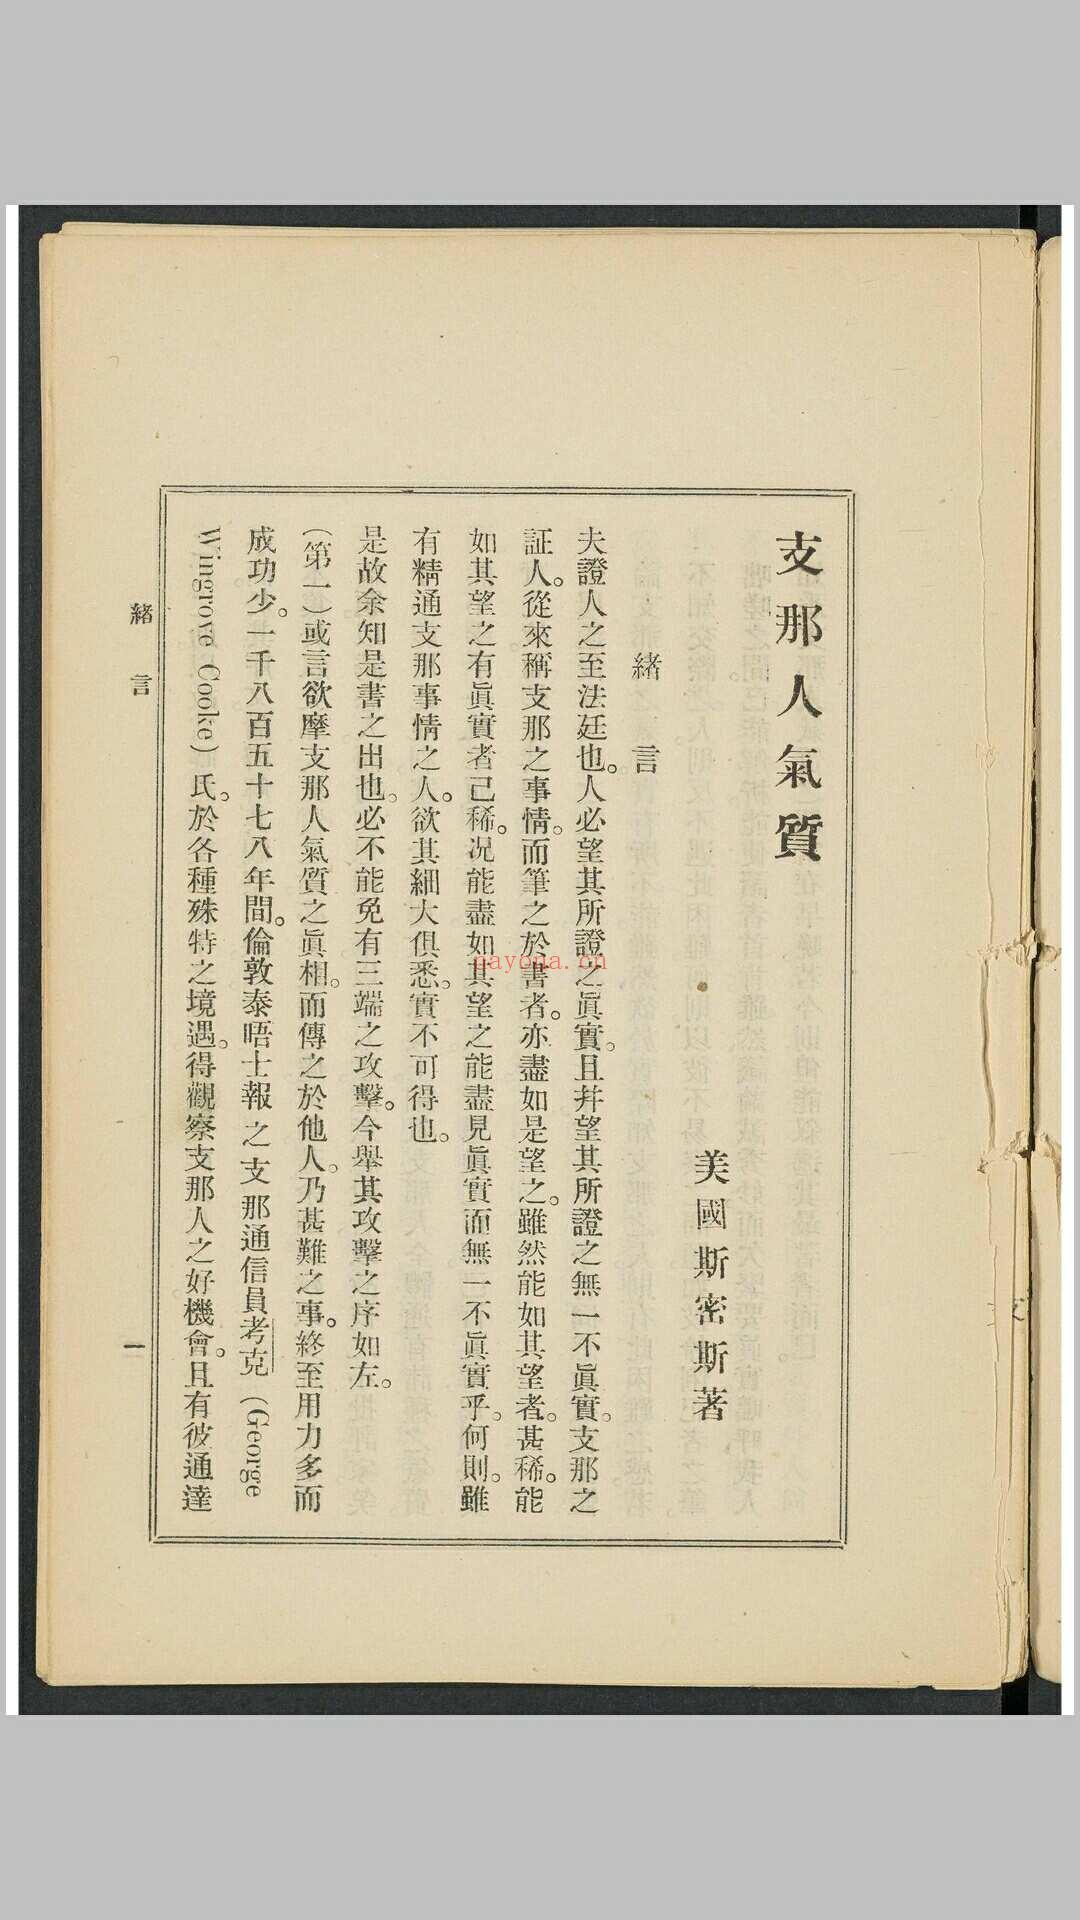 支那人之气质 斯密斯着 作新社译 作新社, 1903